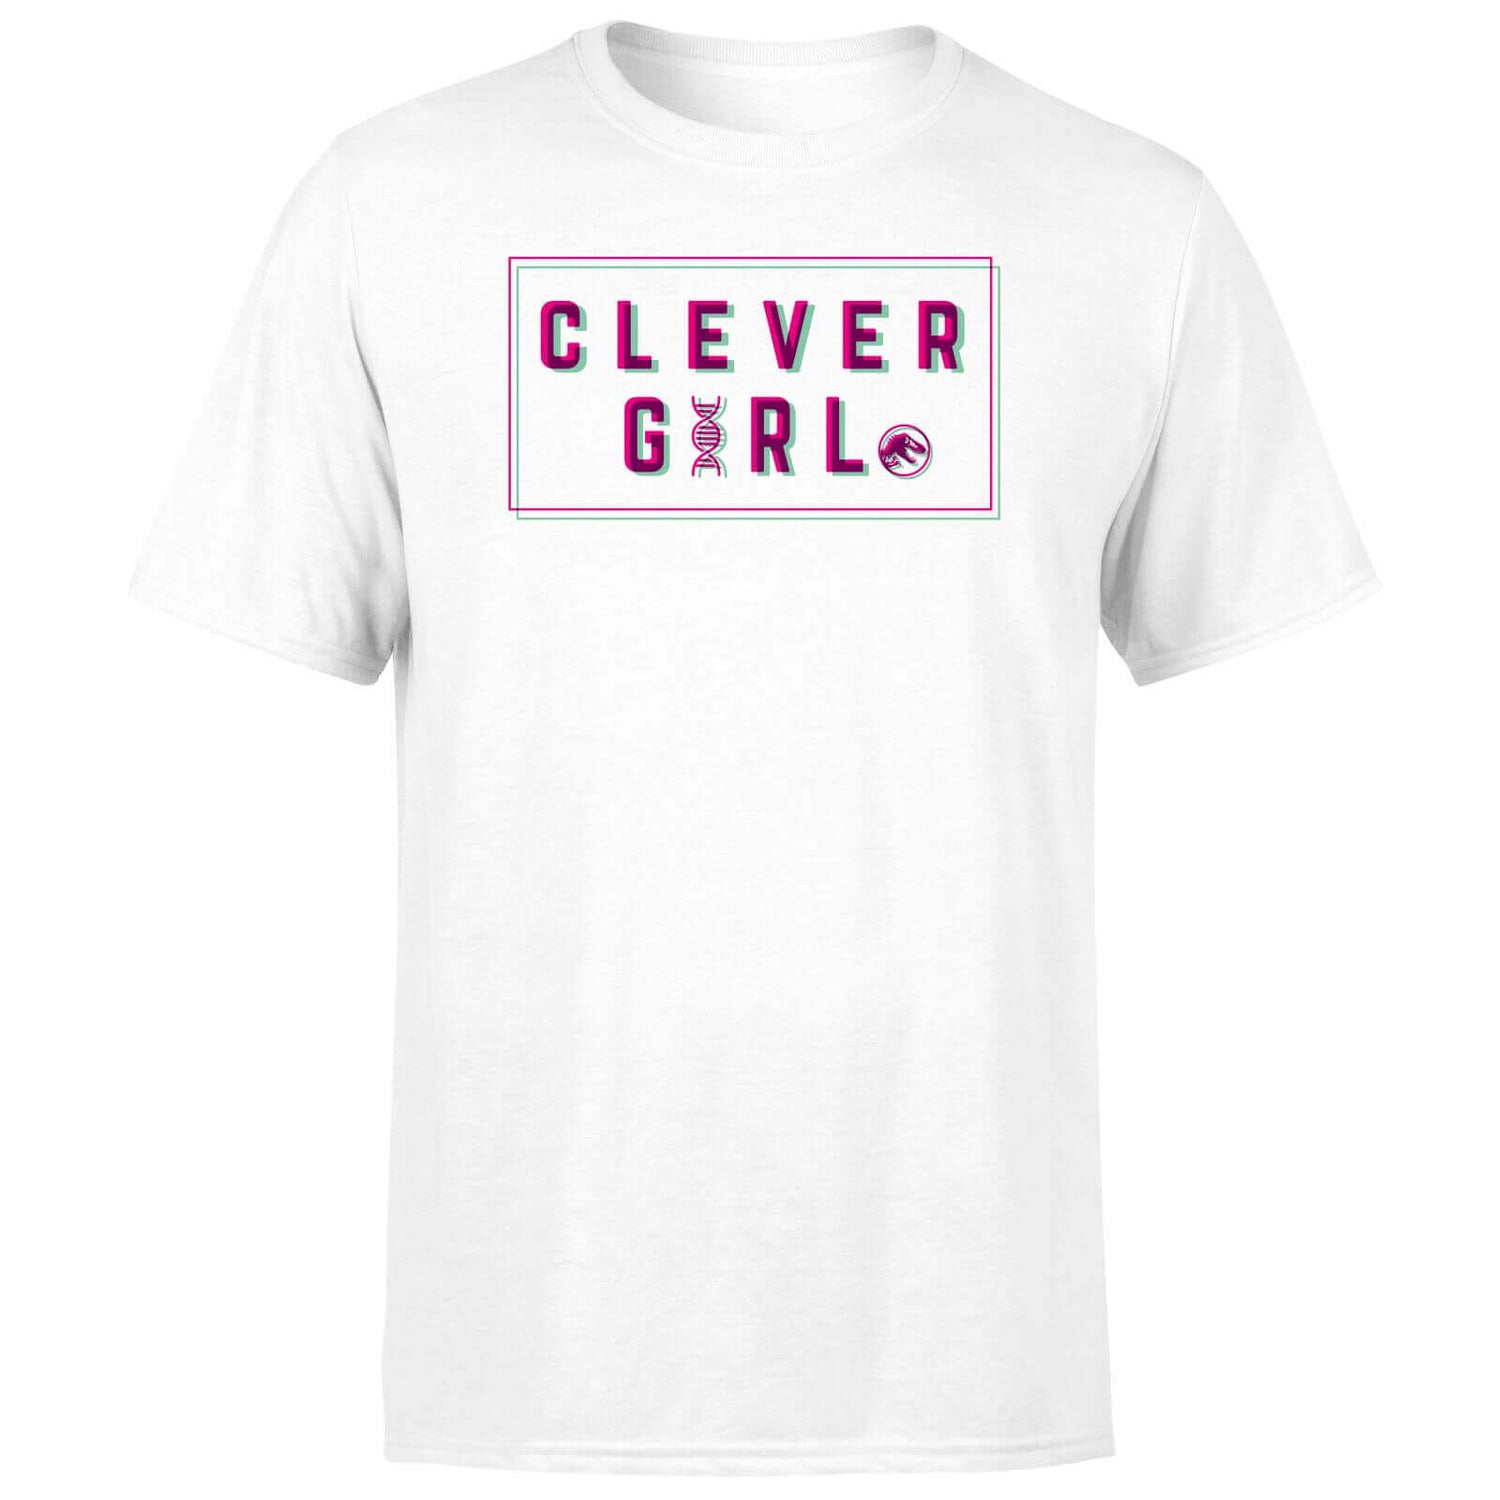 Jurassic Park Clever Girl Men's T-Shirt - White